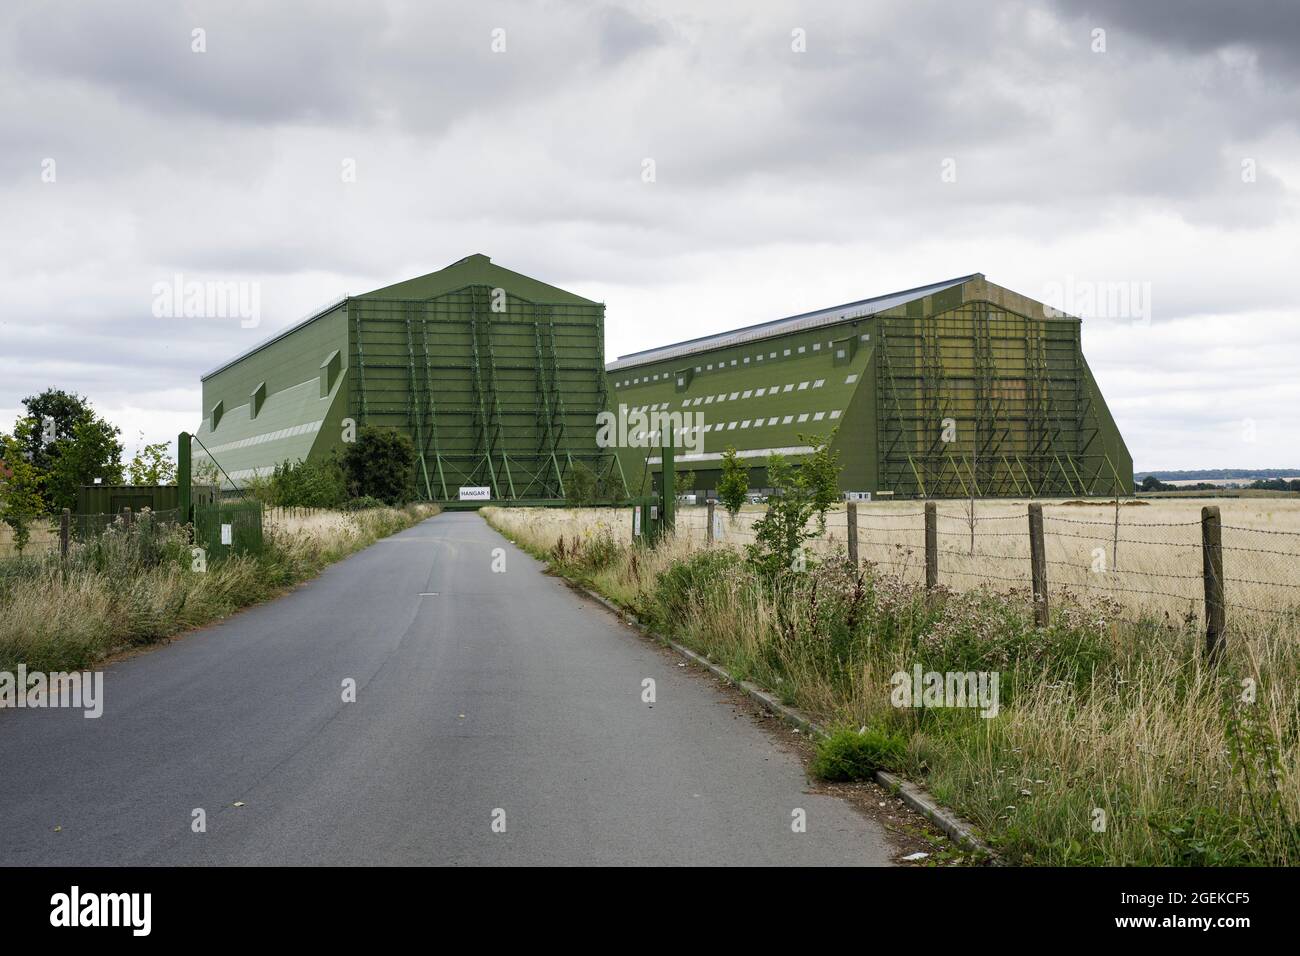 Cardington Studios en Bedfordshire, Reino Unido. Dos hangares convertidos en Cardington airfield ahora albergan estudios de cine. Foto de stock